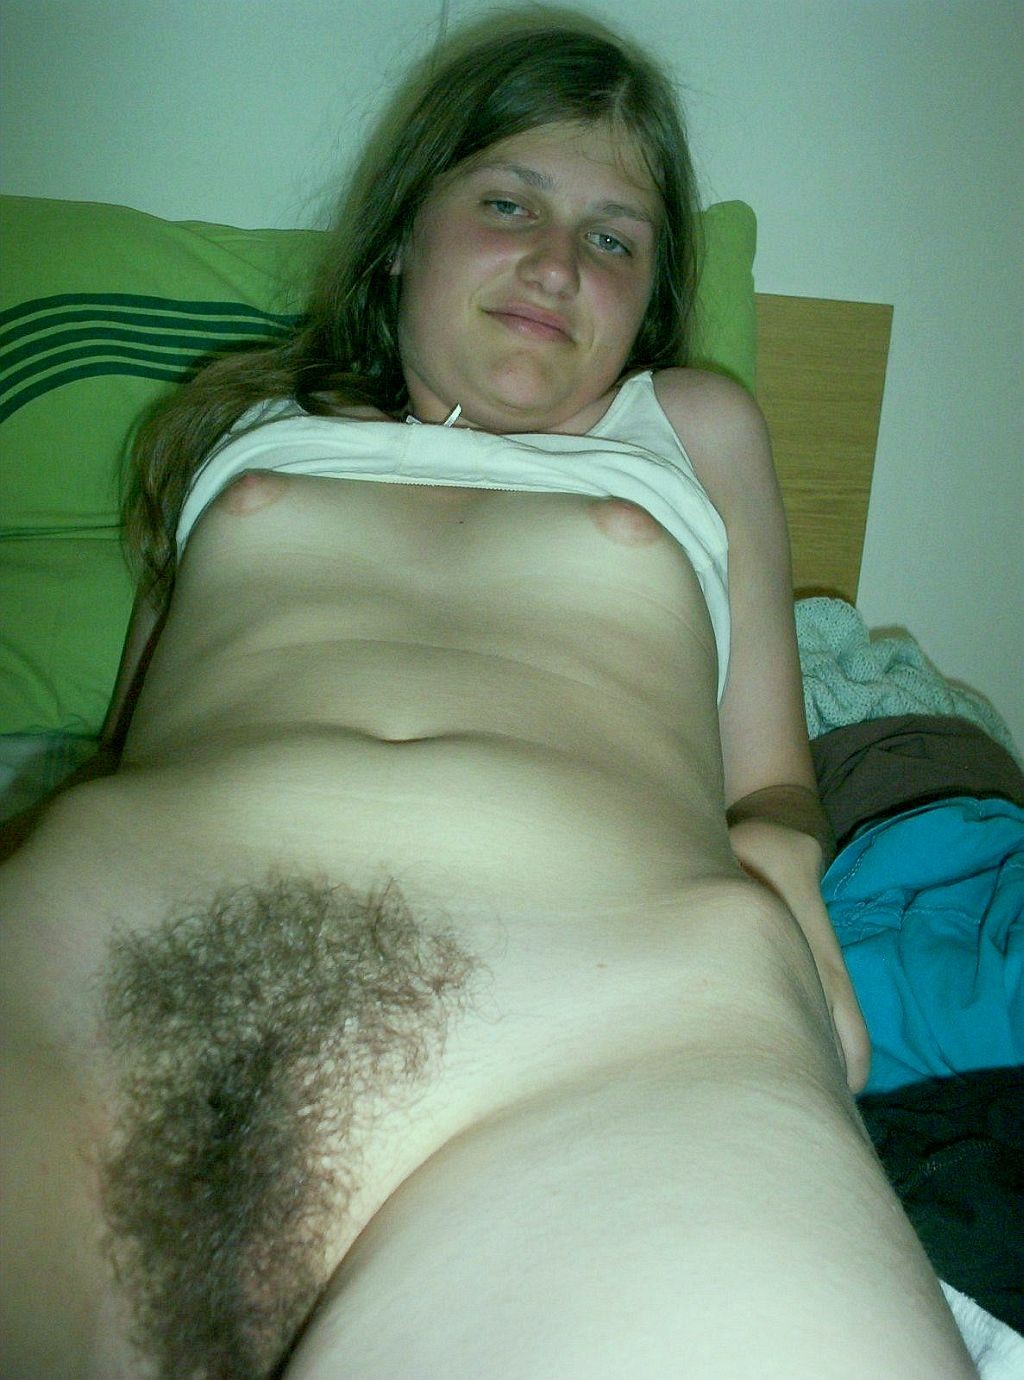 hairy amateur girlfriend posing